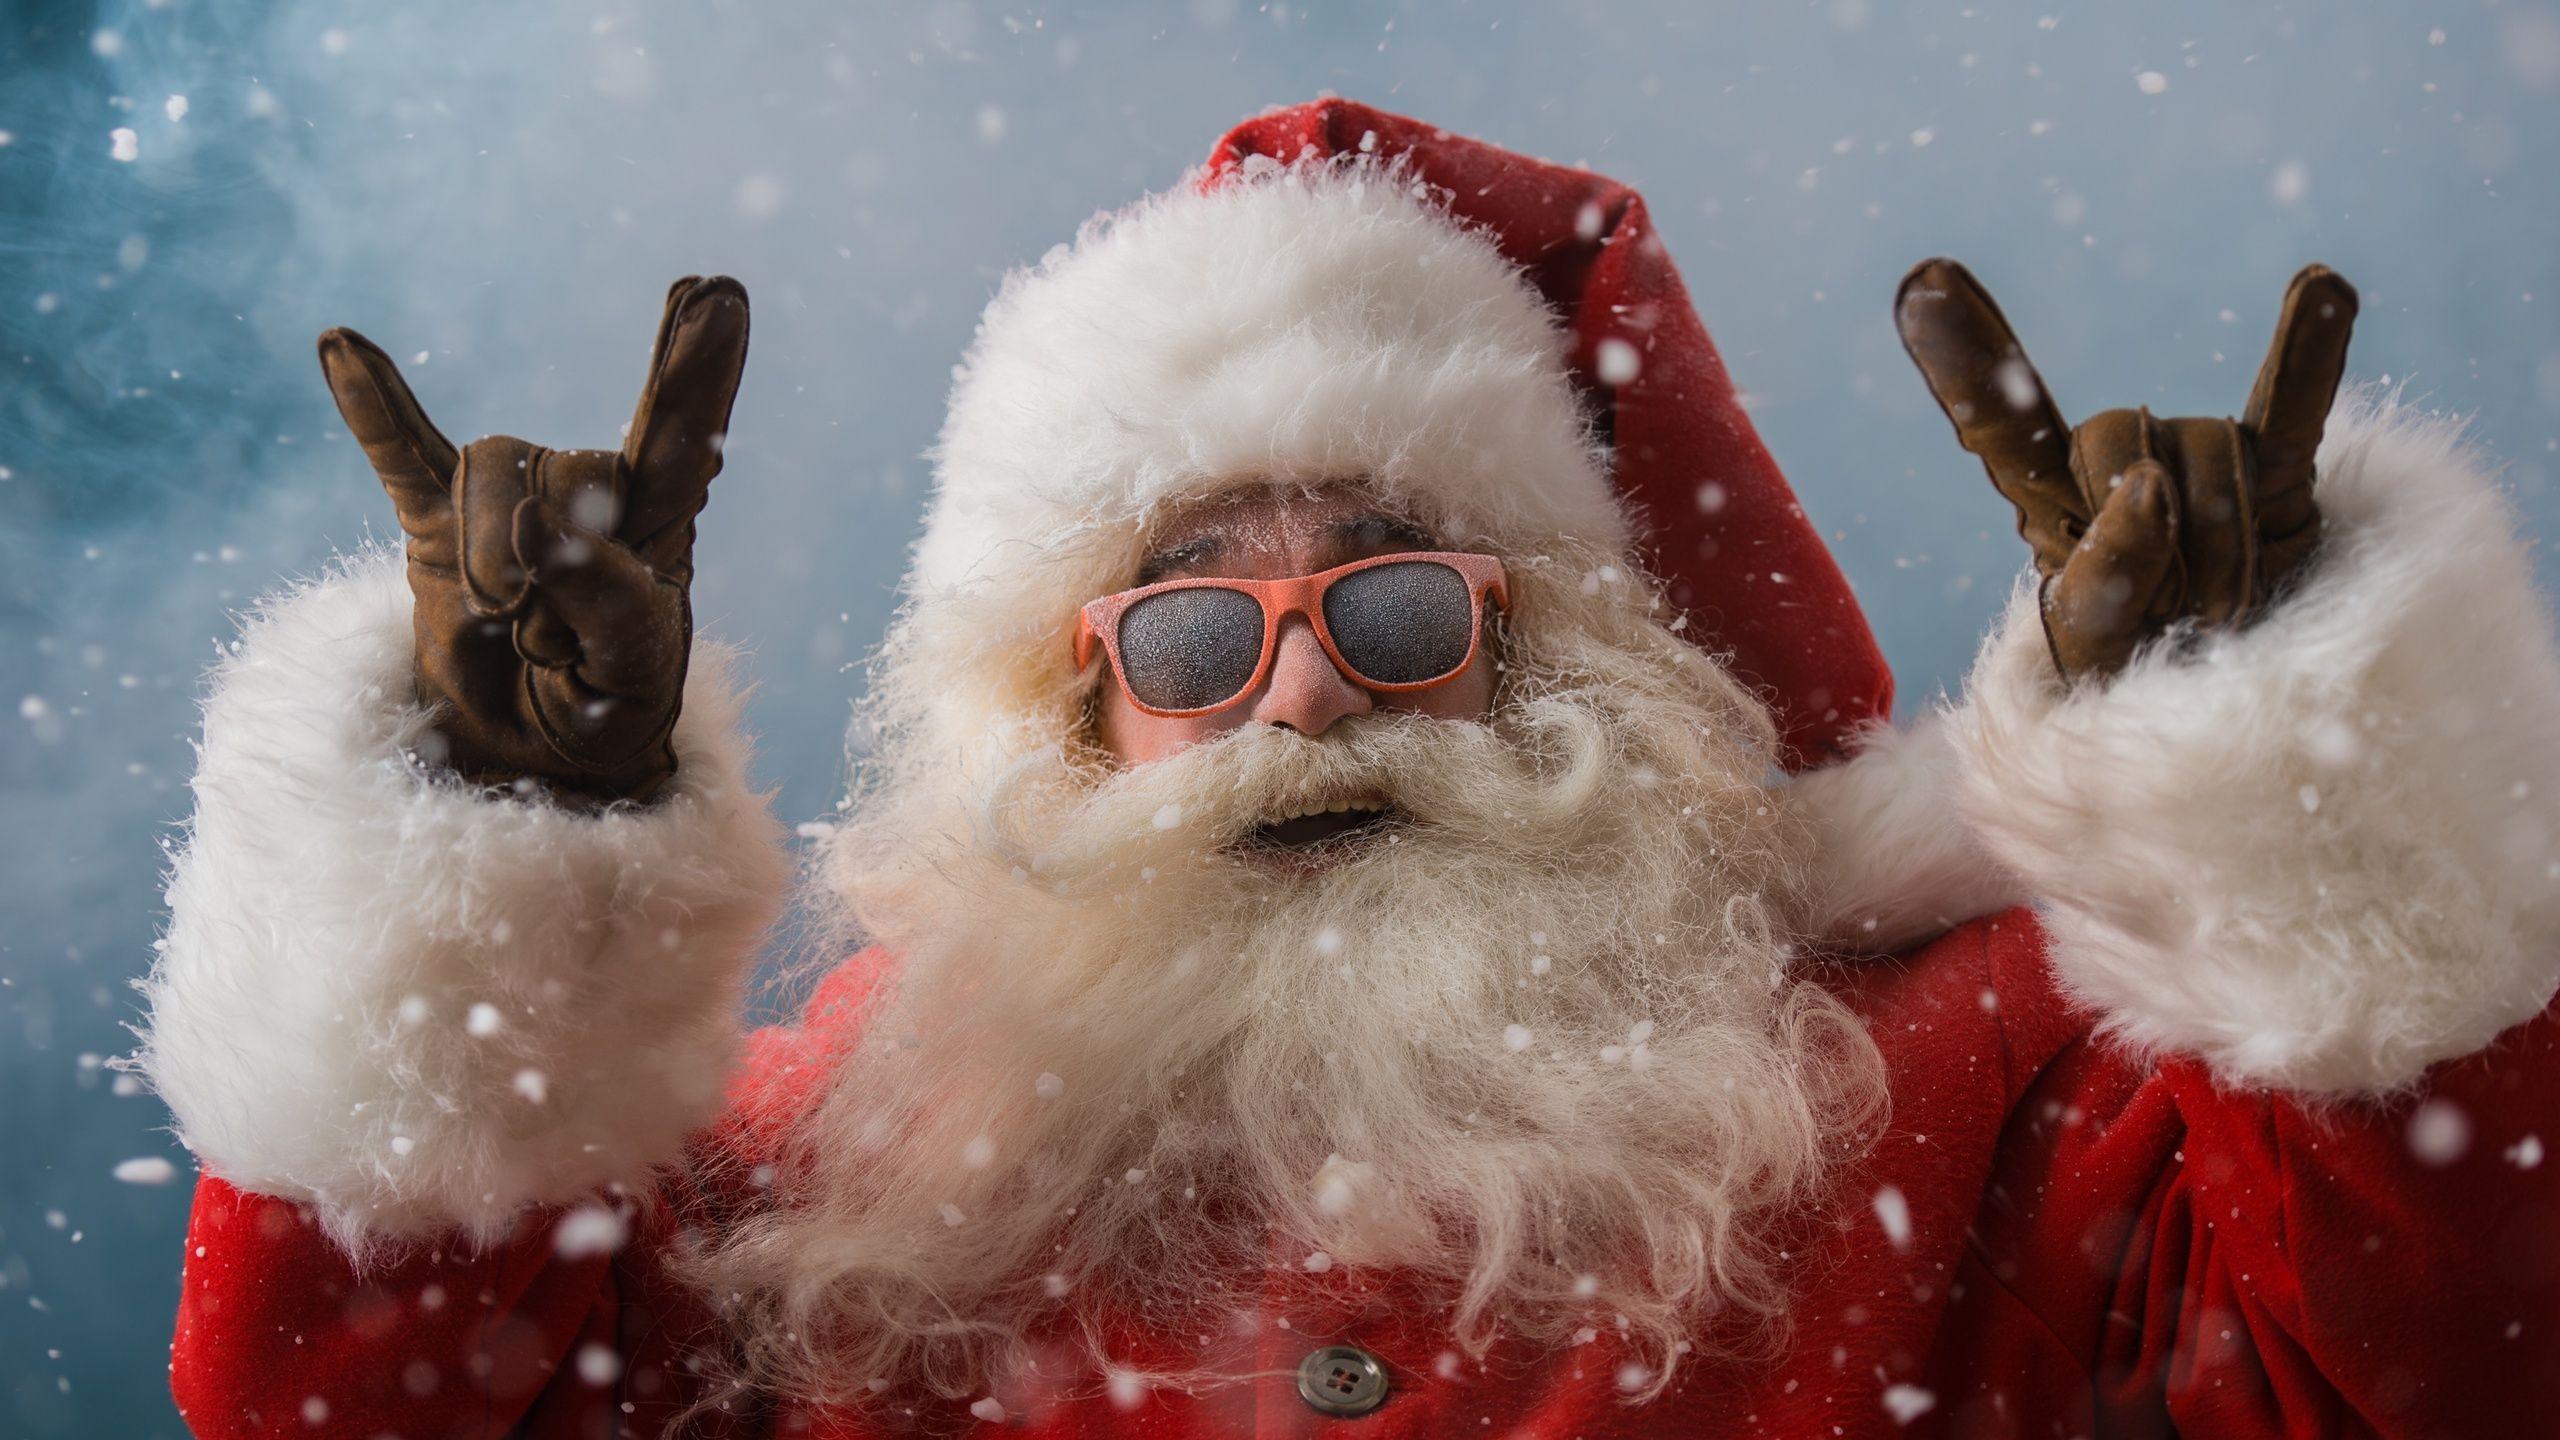 Hãy cùng chiêm ngưỡng hình ảnh ông già Noel đang chuẩn bị cho chuyến phát quà giáng sinh sắp tới. Sự hào hứng và vui tươi đang lan toả trên gương mặt ông ta, chắc chắn sẽ khiến bạn cảm thấy thật háo hức cho những điều tuyệt vời sẽ đến với mùa giáng sinh này.